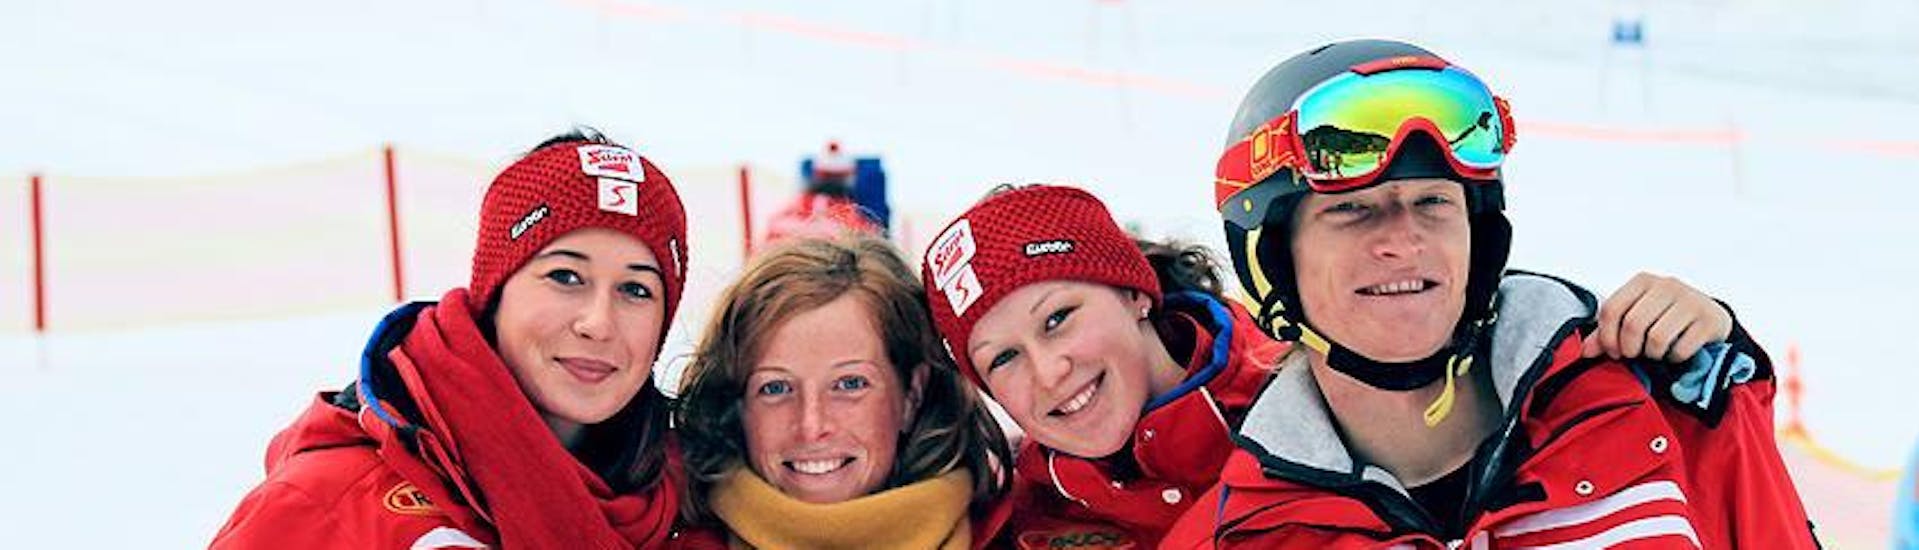 Vier Skilehrer der Qualitäts-Skischule Brunner lächeln in die Kamera und freuen sich auf die Teilnehmer des Kinder-Skikurses aller Stufen.